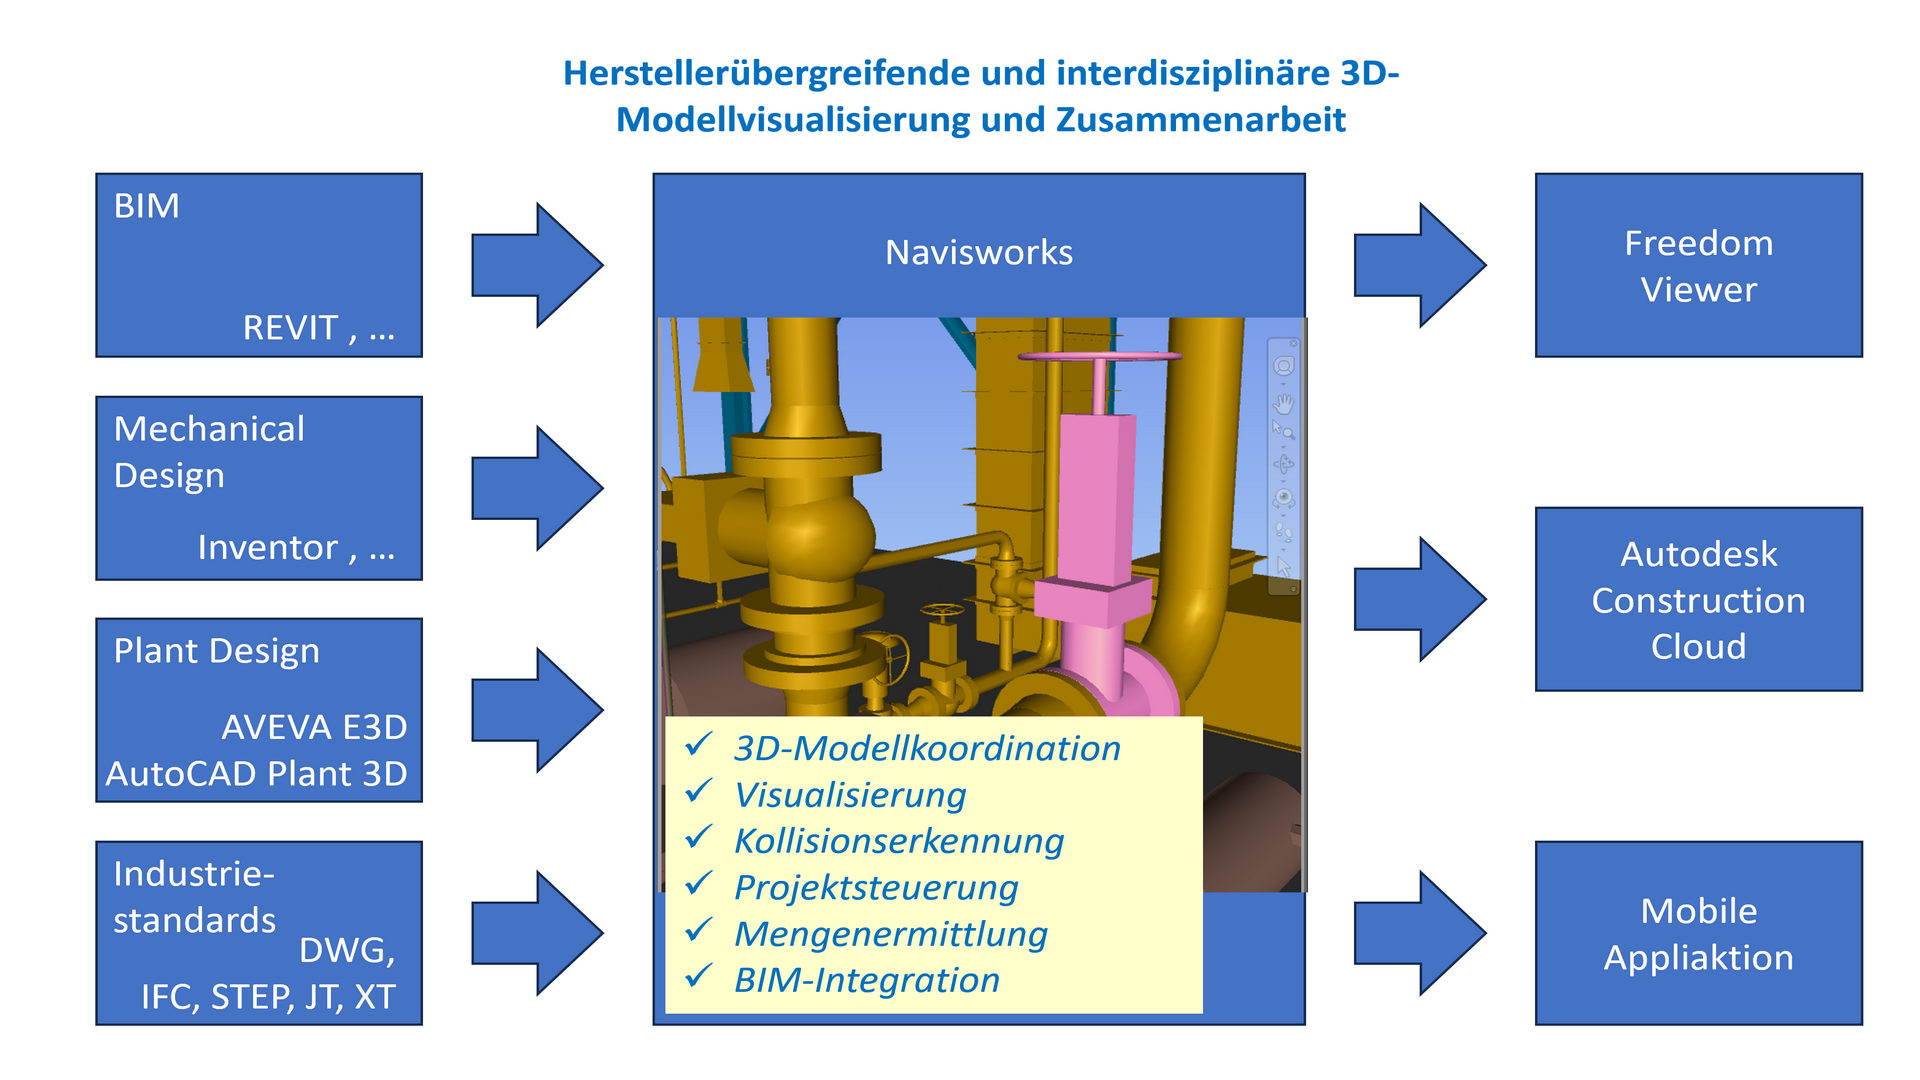 Herstellerübergreifende und interdisziplinäre 3D-Modellvisualisierung und Zusammenarbeit